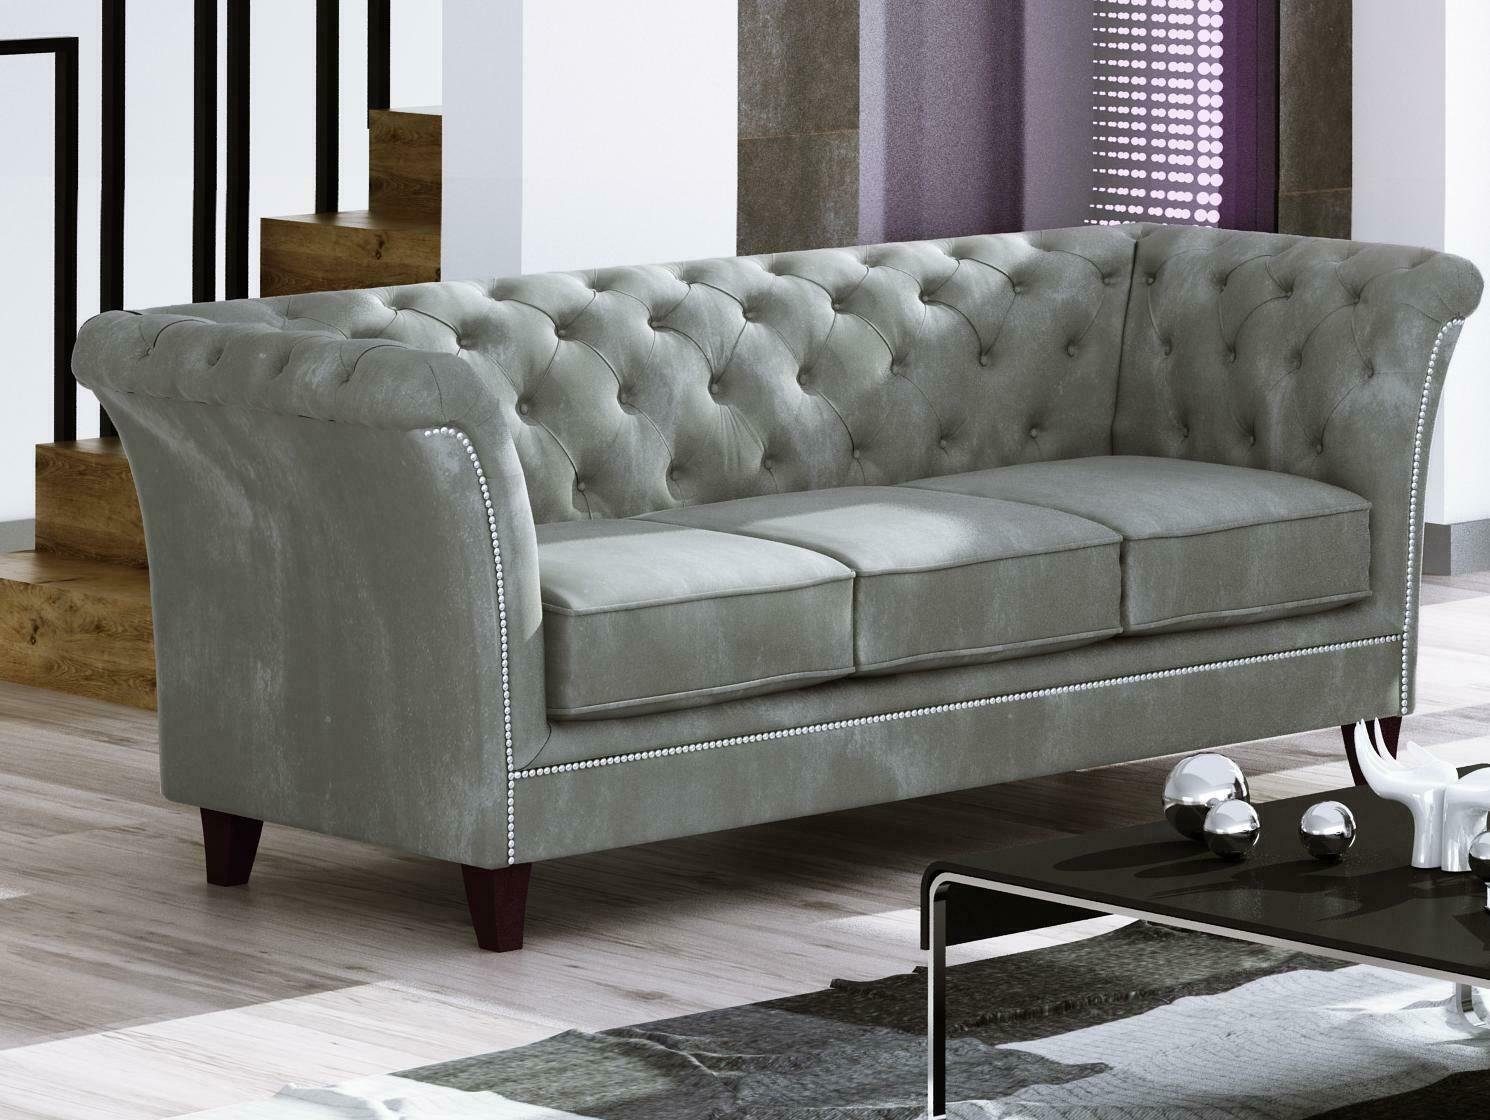 Neu, Möbel Europe Chesterfield Sofa JVmoebel Made Edel Grüner Luxus in Dreisitzer 3-Sitzer Couch